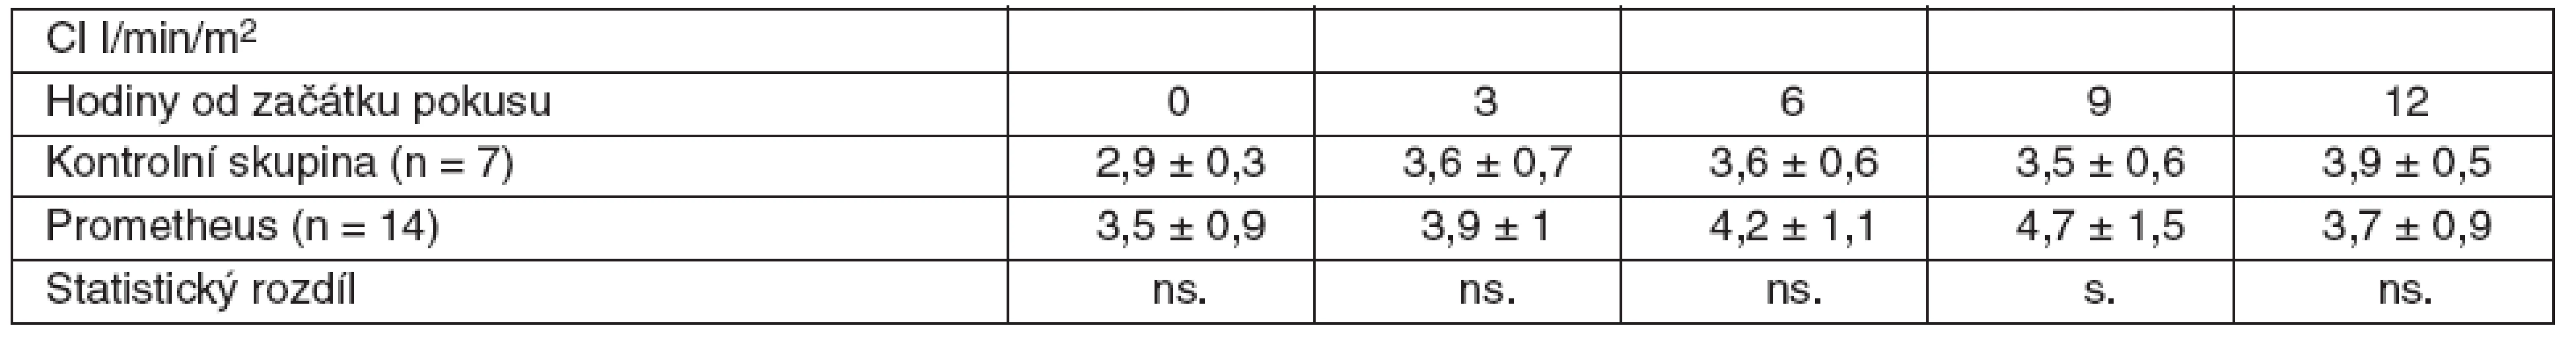 Srovnání průměrných hodnot CI včetně SD ve skupině zvířat s ASJ léčeným FPSA a u kontrolní skupiny bez léčby
SD – standardní odchylka, ns. – neliší se, p &gt; 0,05, s. – statisticky významný rozdíl, p &lt; 0,05